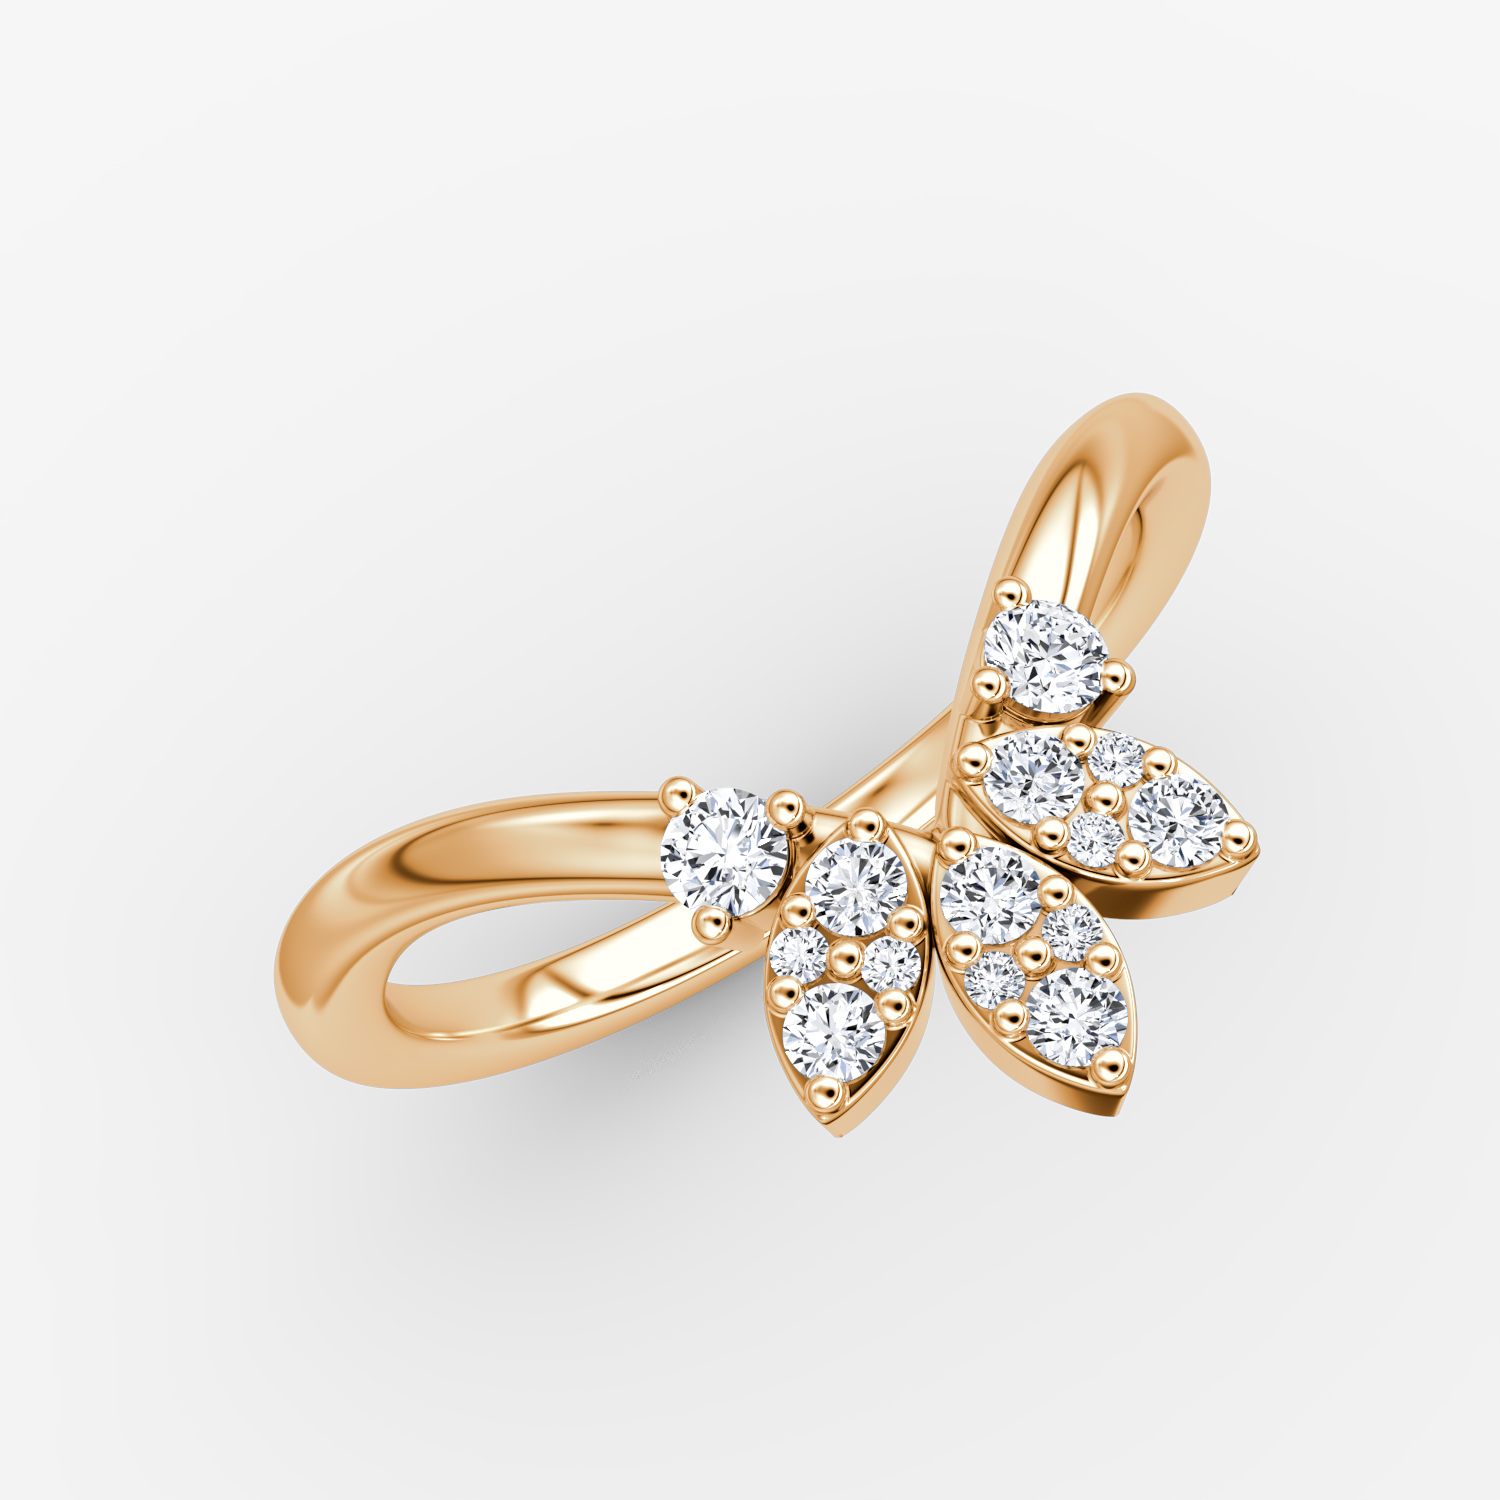 Best Solitaire Ring Designs Split Shank 14K Gold SI1 G 0.90 Carat Round  Diamond | eBay